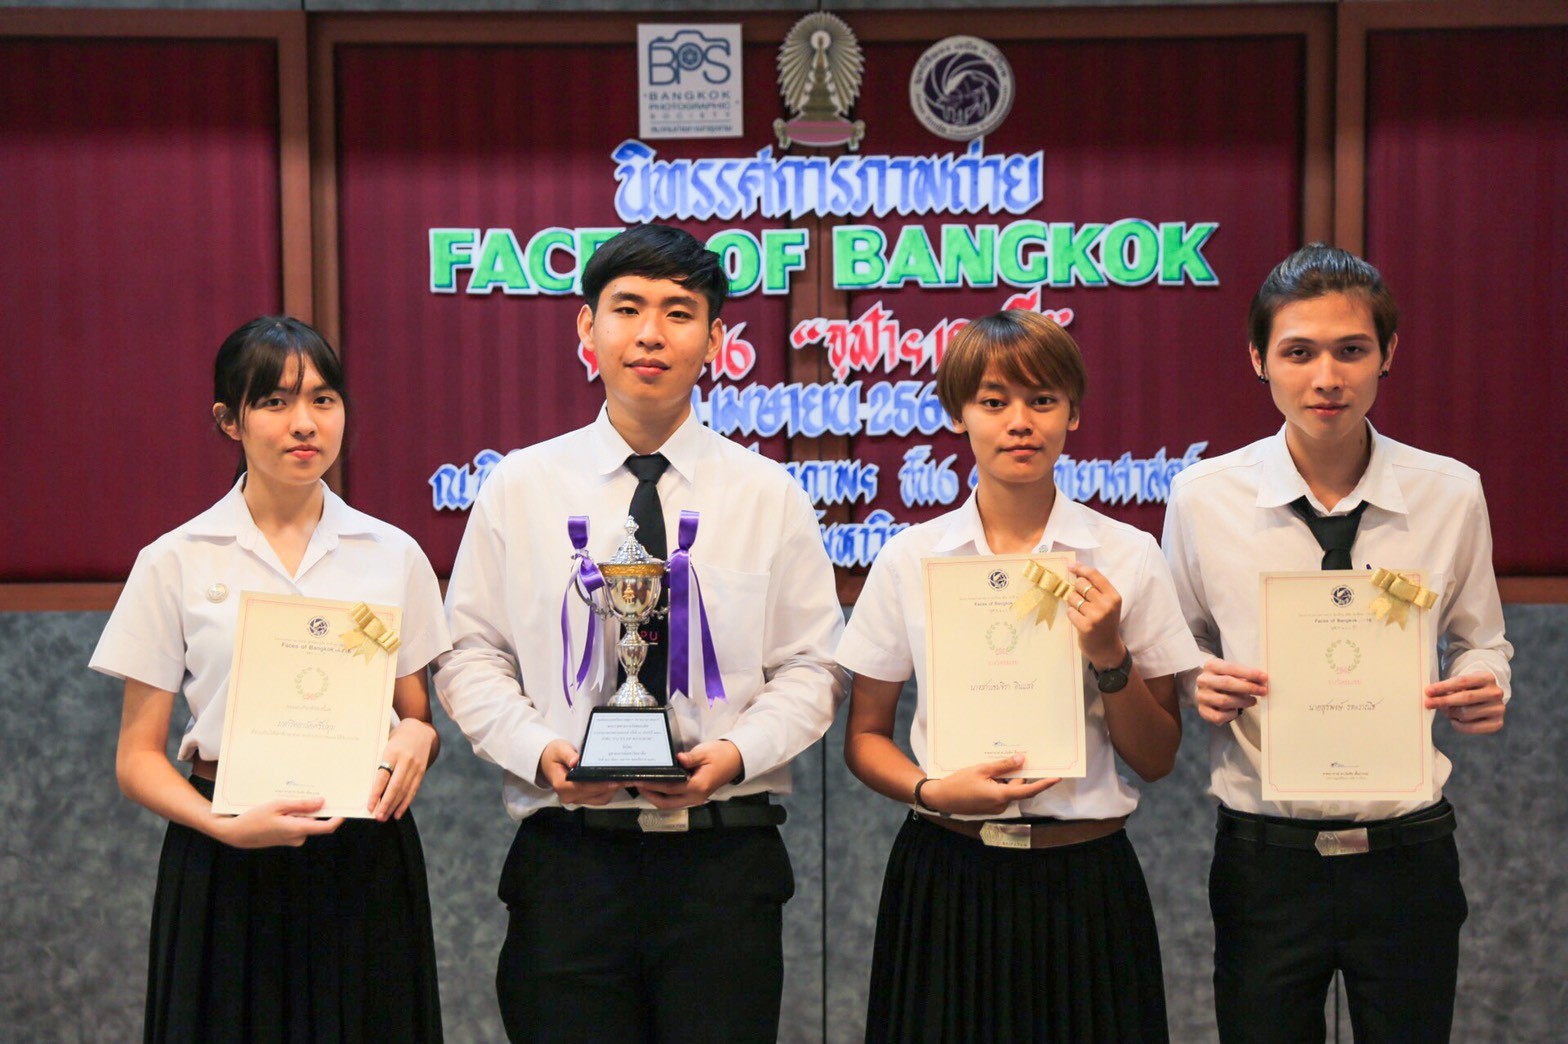 Faces of Bangkok SPU จุฬาฯ100ปี ประกวดภาพถ่าย มหาวิทยาลัยศรีปทุม รับรางวัลชนะเลิศ